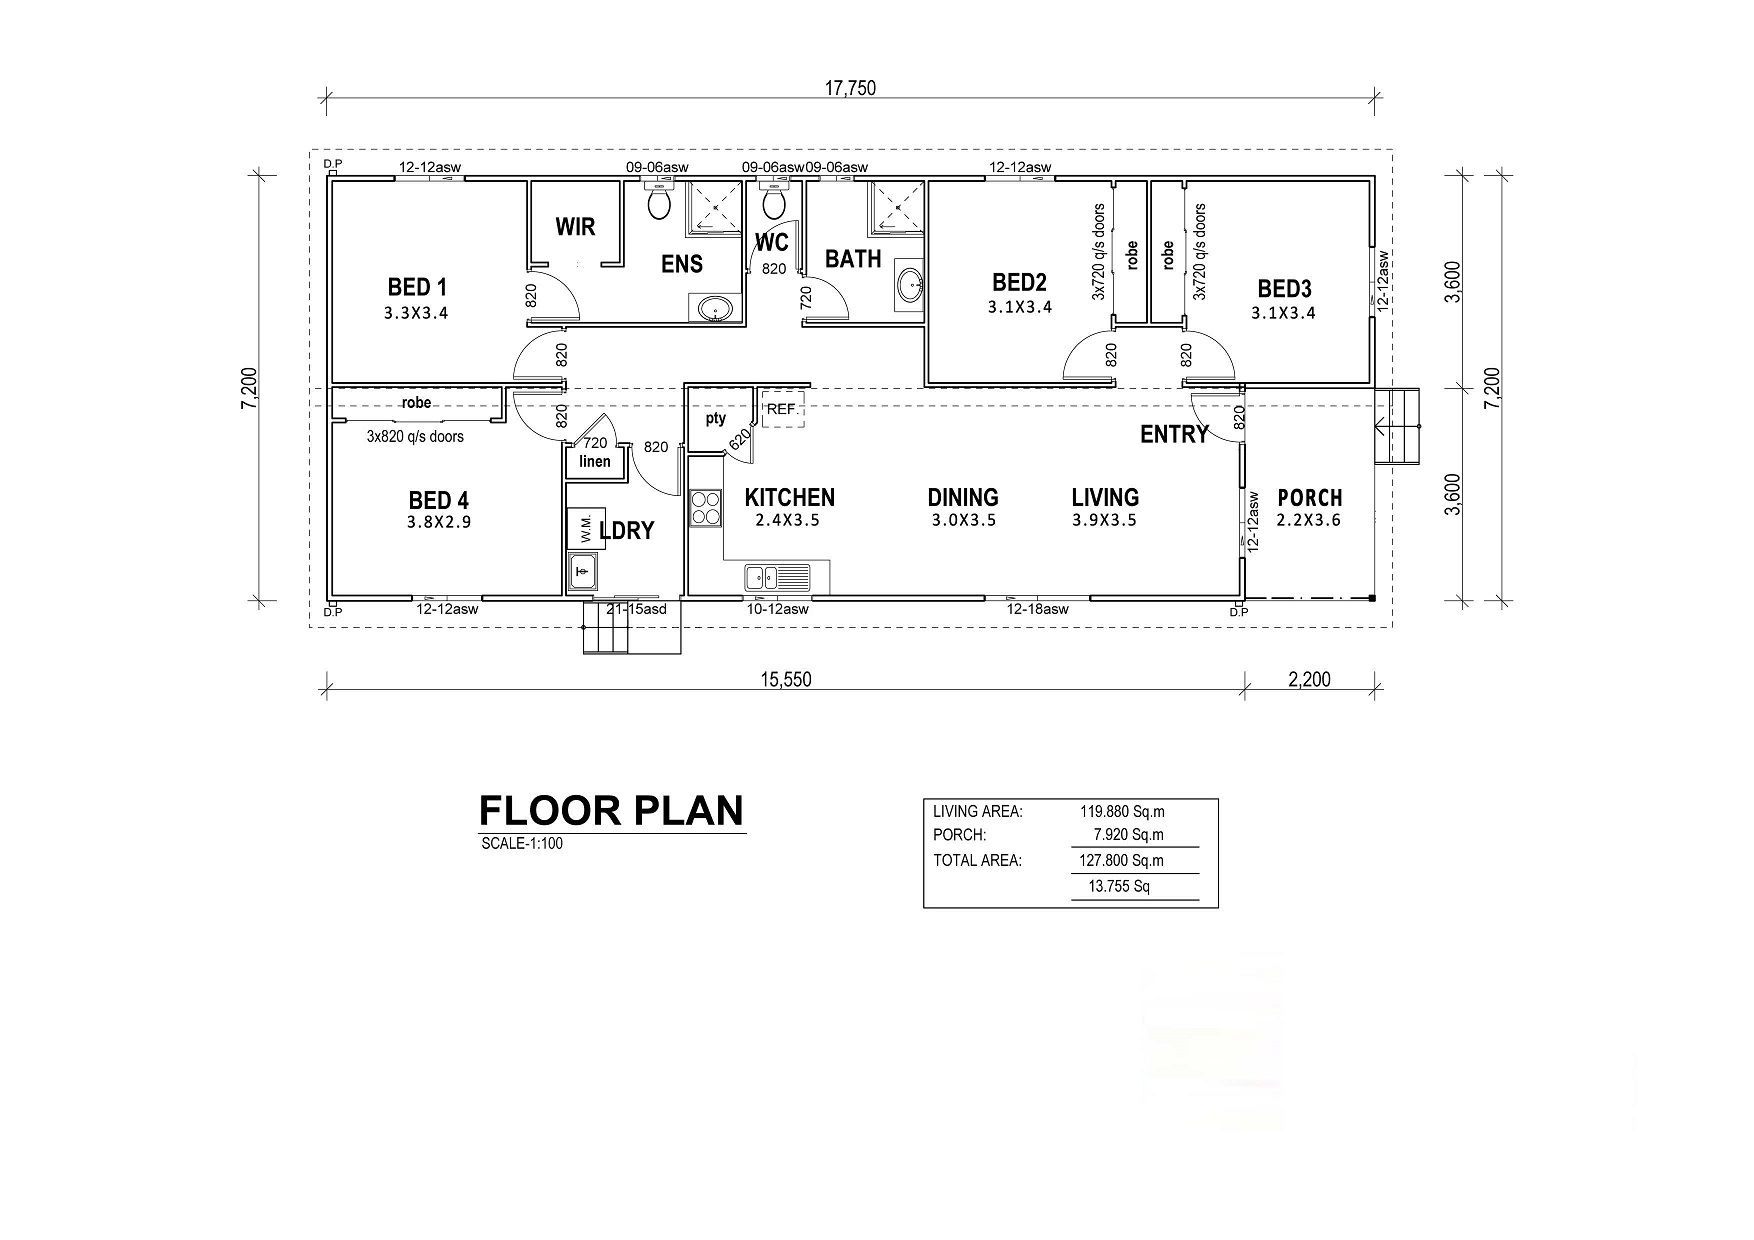 Villetta Floor Plan